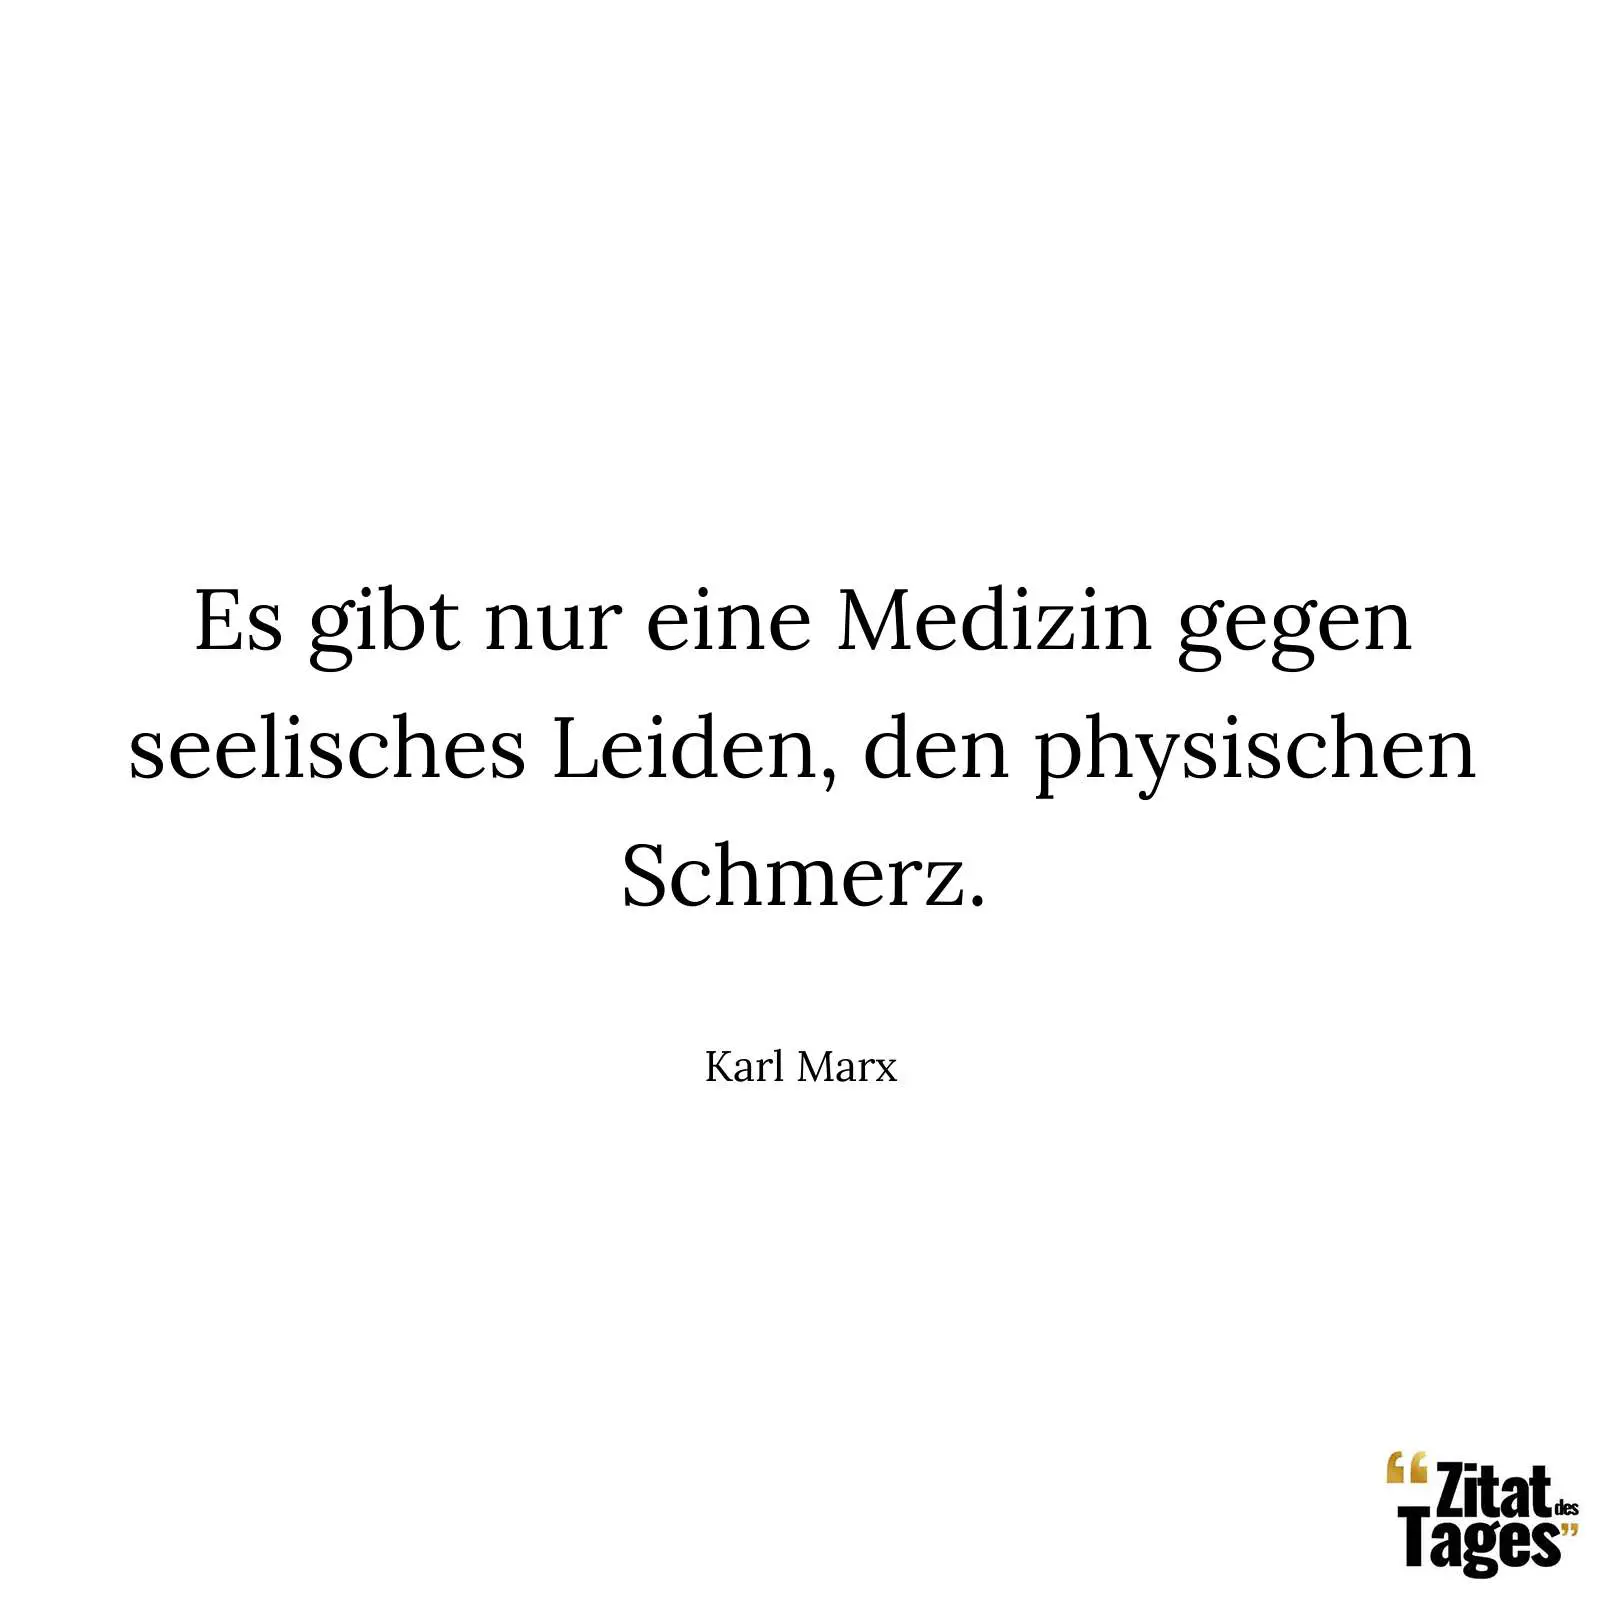 Es gibt nur eine Medizin gegen seelisches Leiden, den physischen Schmerz. - Karl Marx